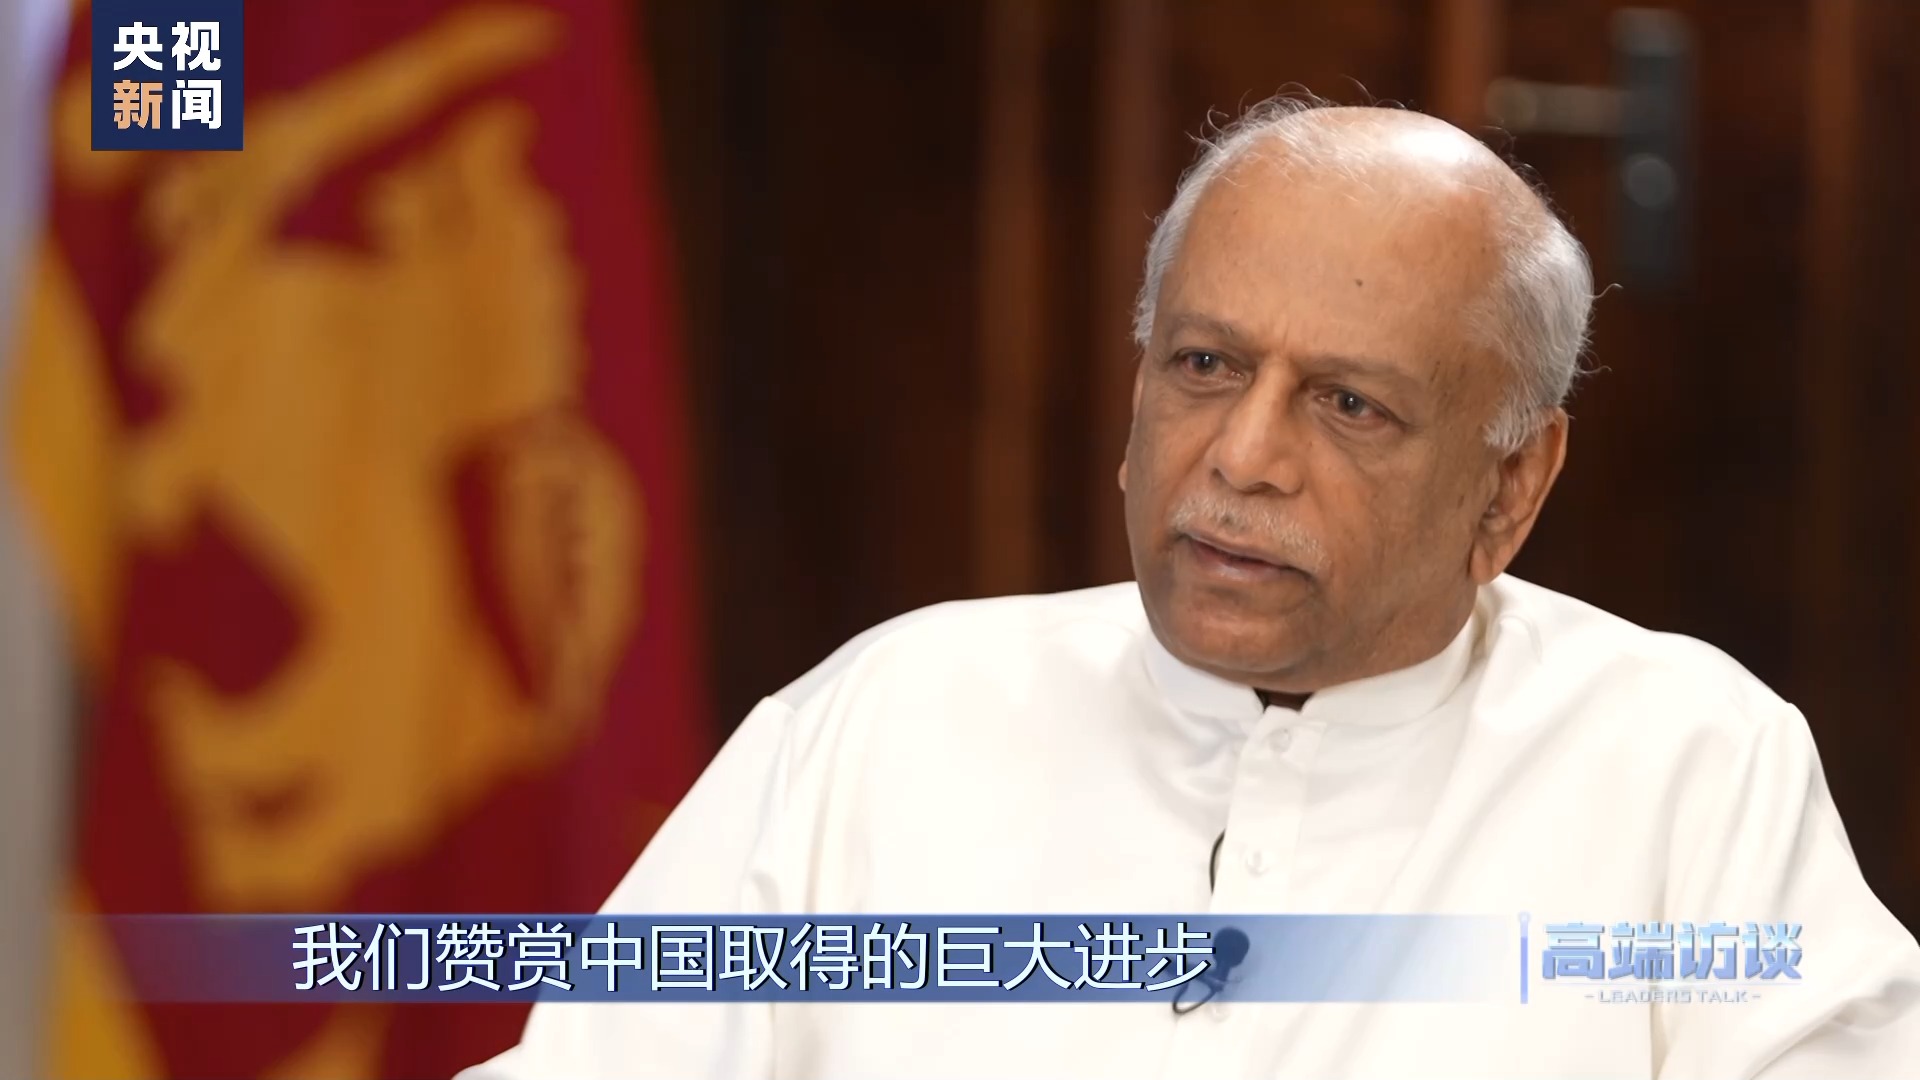 Primeiro-ministro do Sri Lanka disse que o encontro com Xi Jinping foi positivo e bem-sucedido